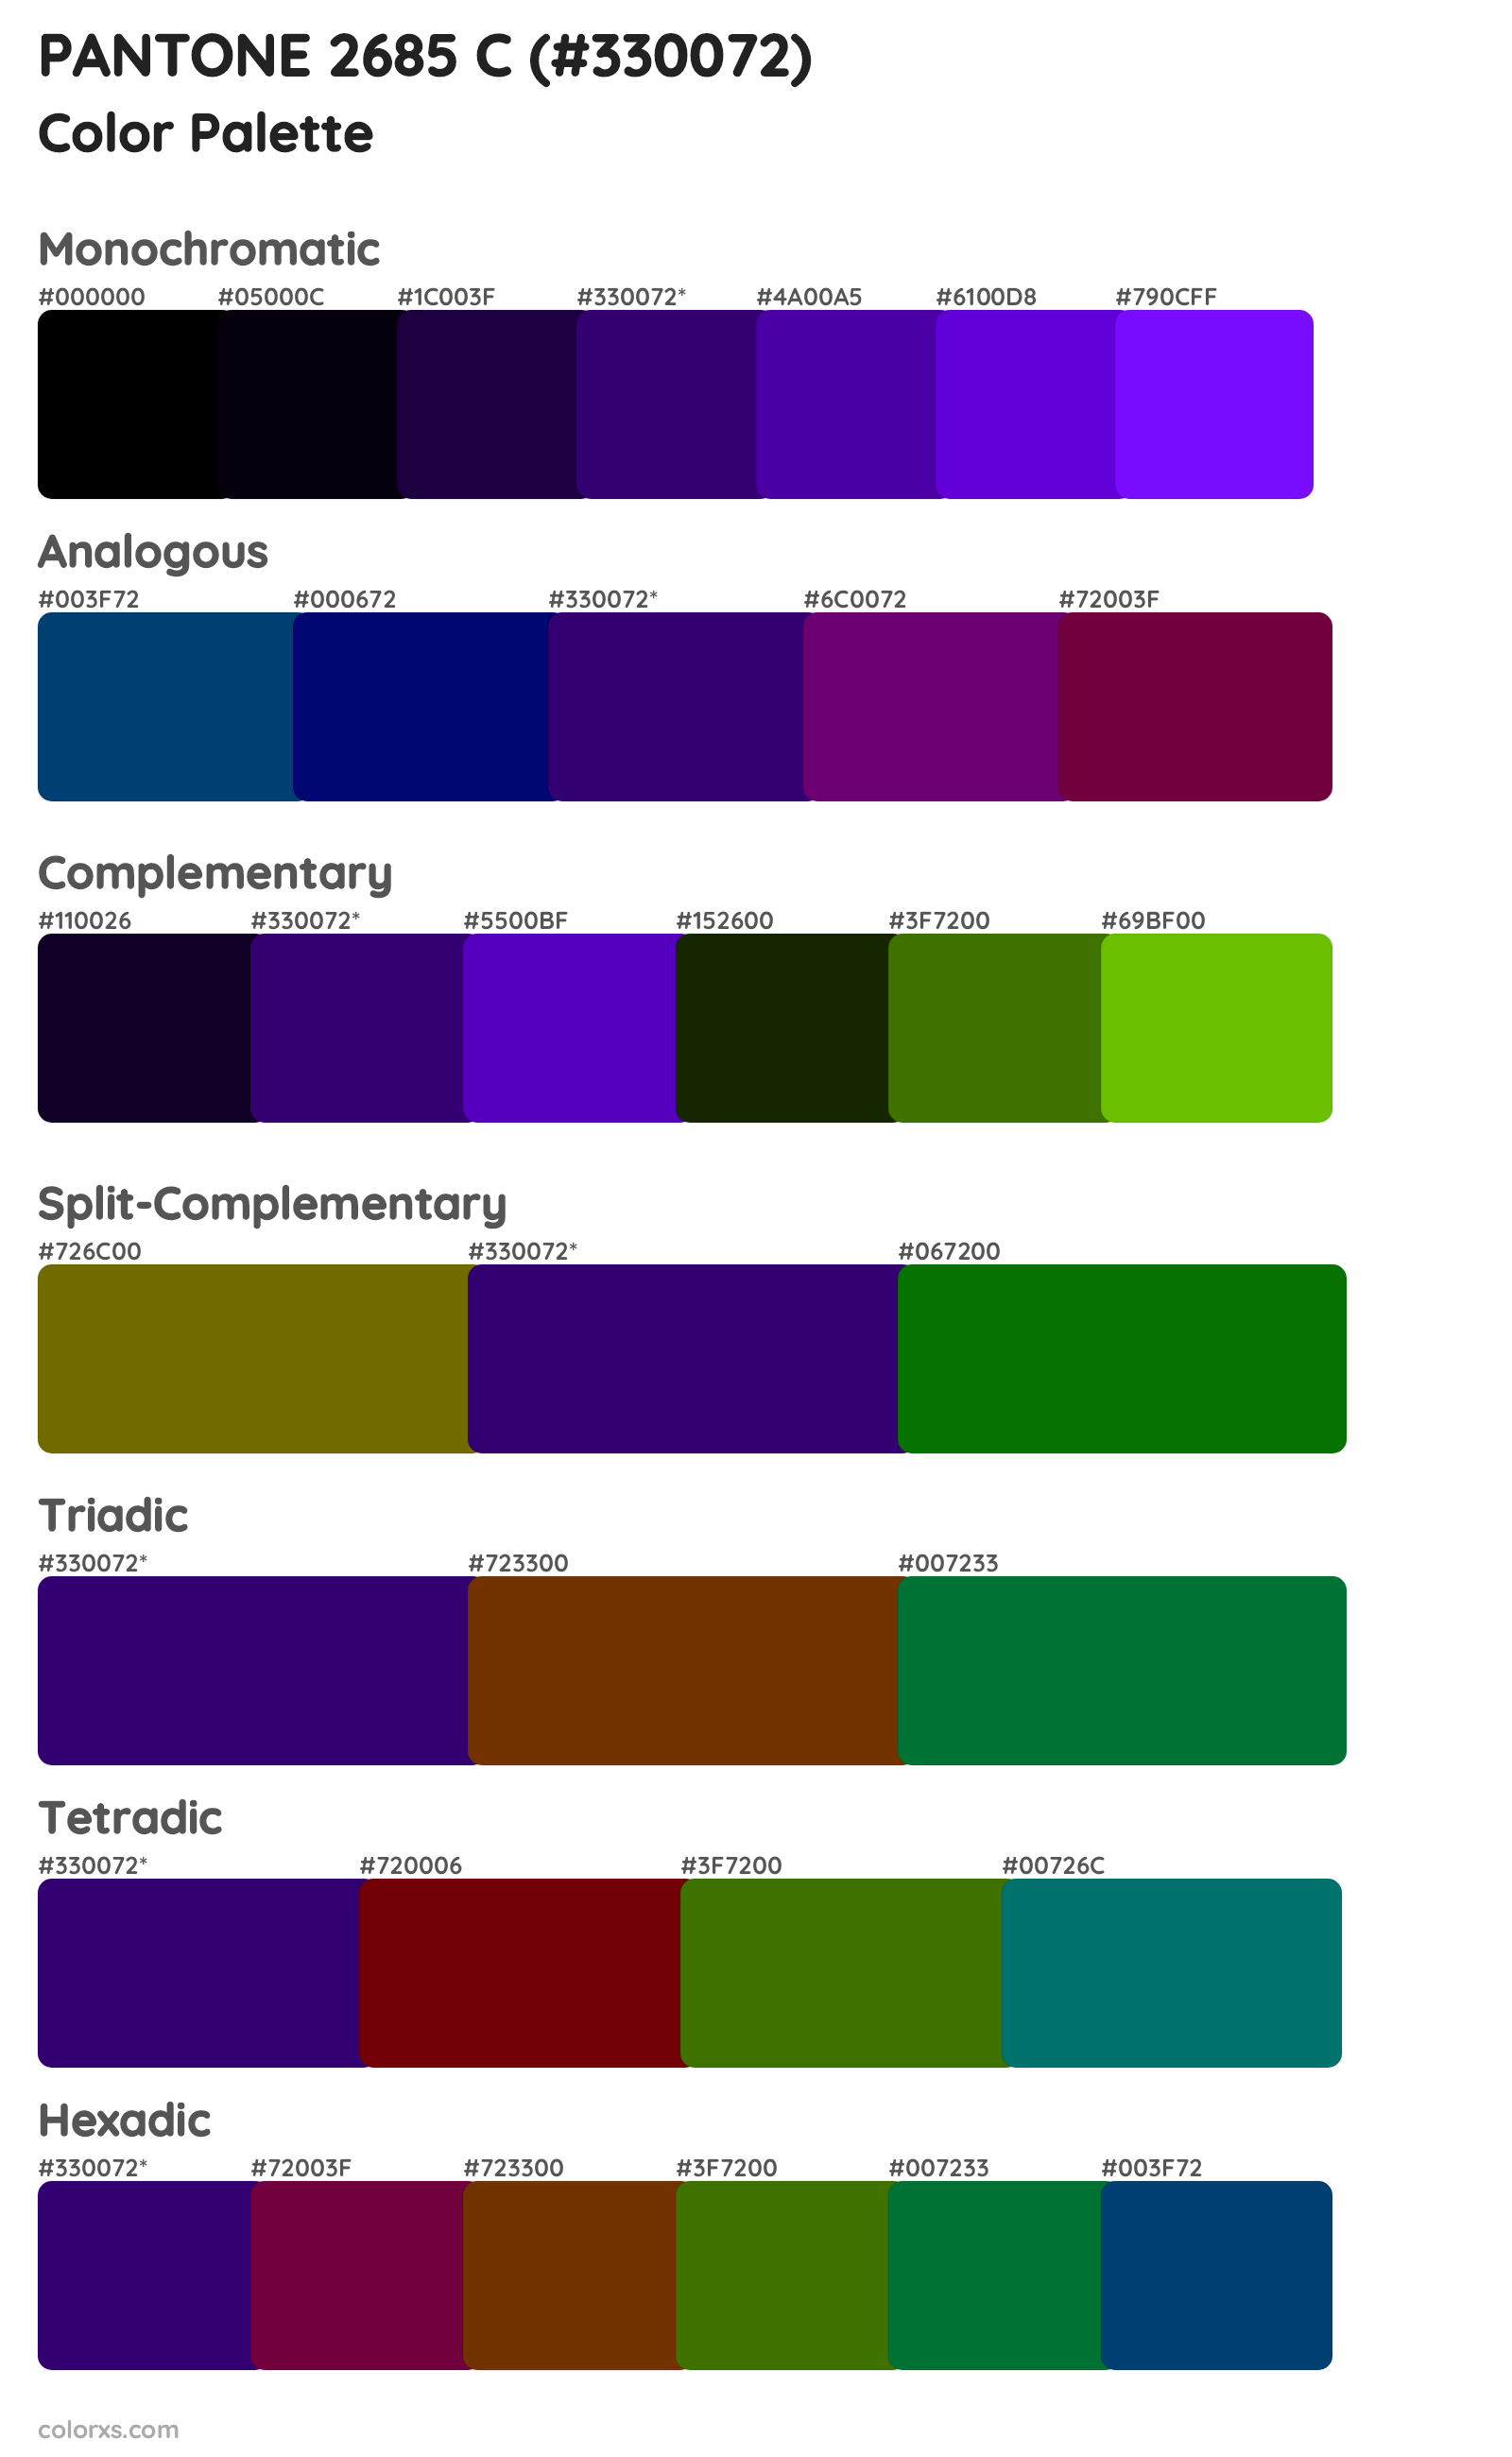 PANTONE 2685 C Color Scheme Palettes